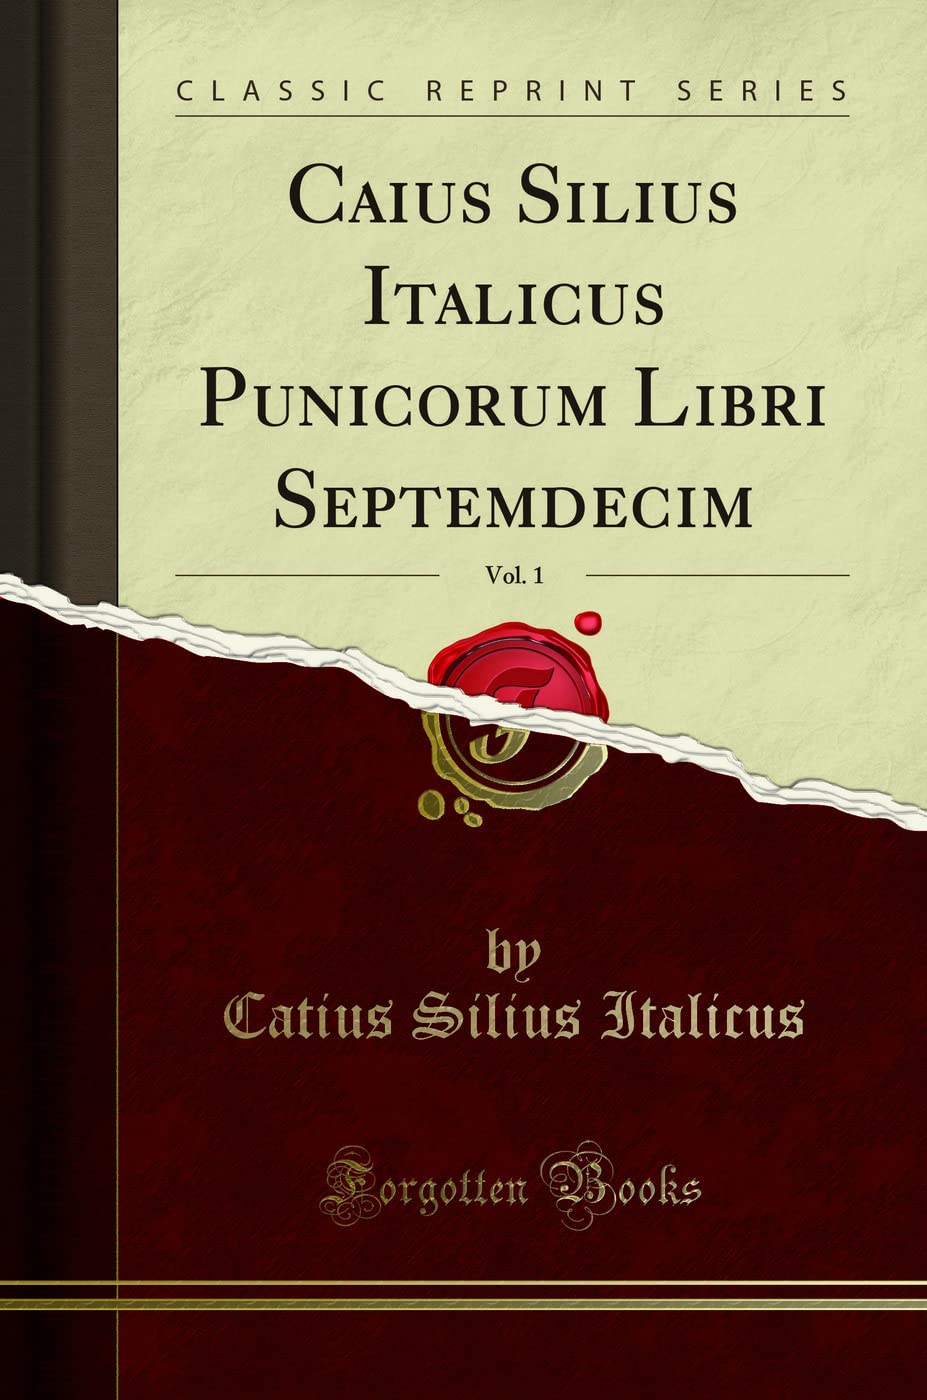 Caius Silius Italicus Punicorum Libri Septemdecim